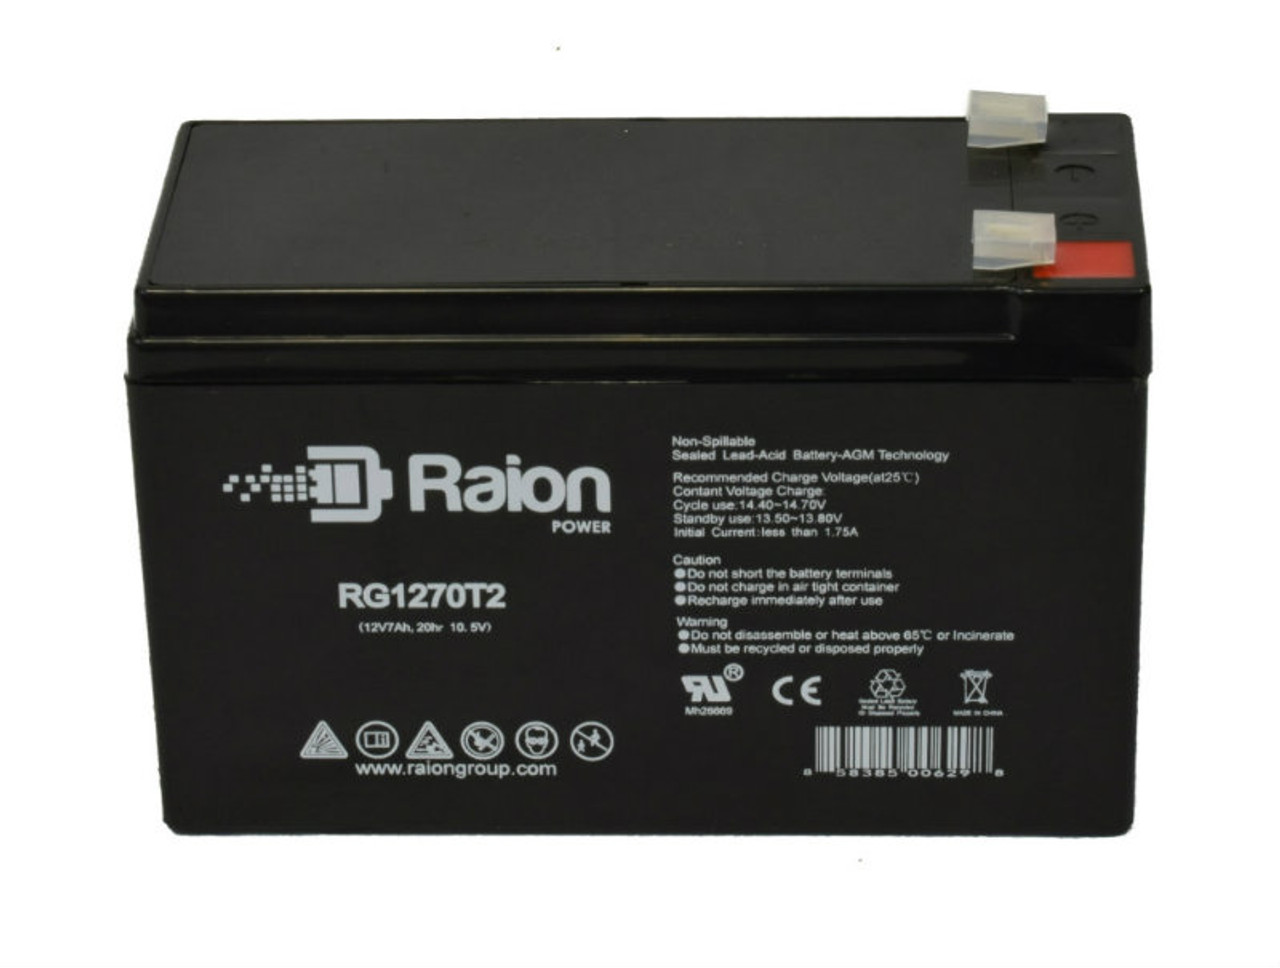 Raion Power RG1270T1 12V 7Ah Lead Acid Battery for Otolift Line Stairlift